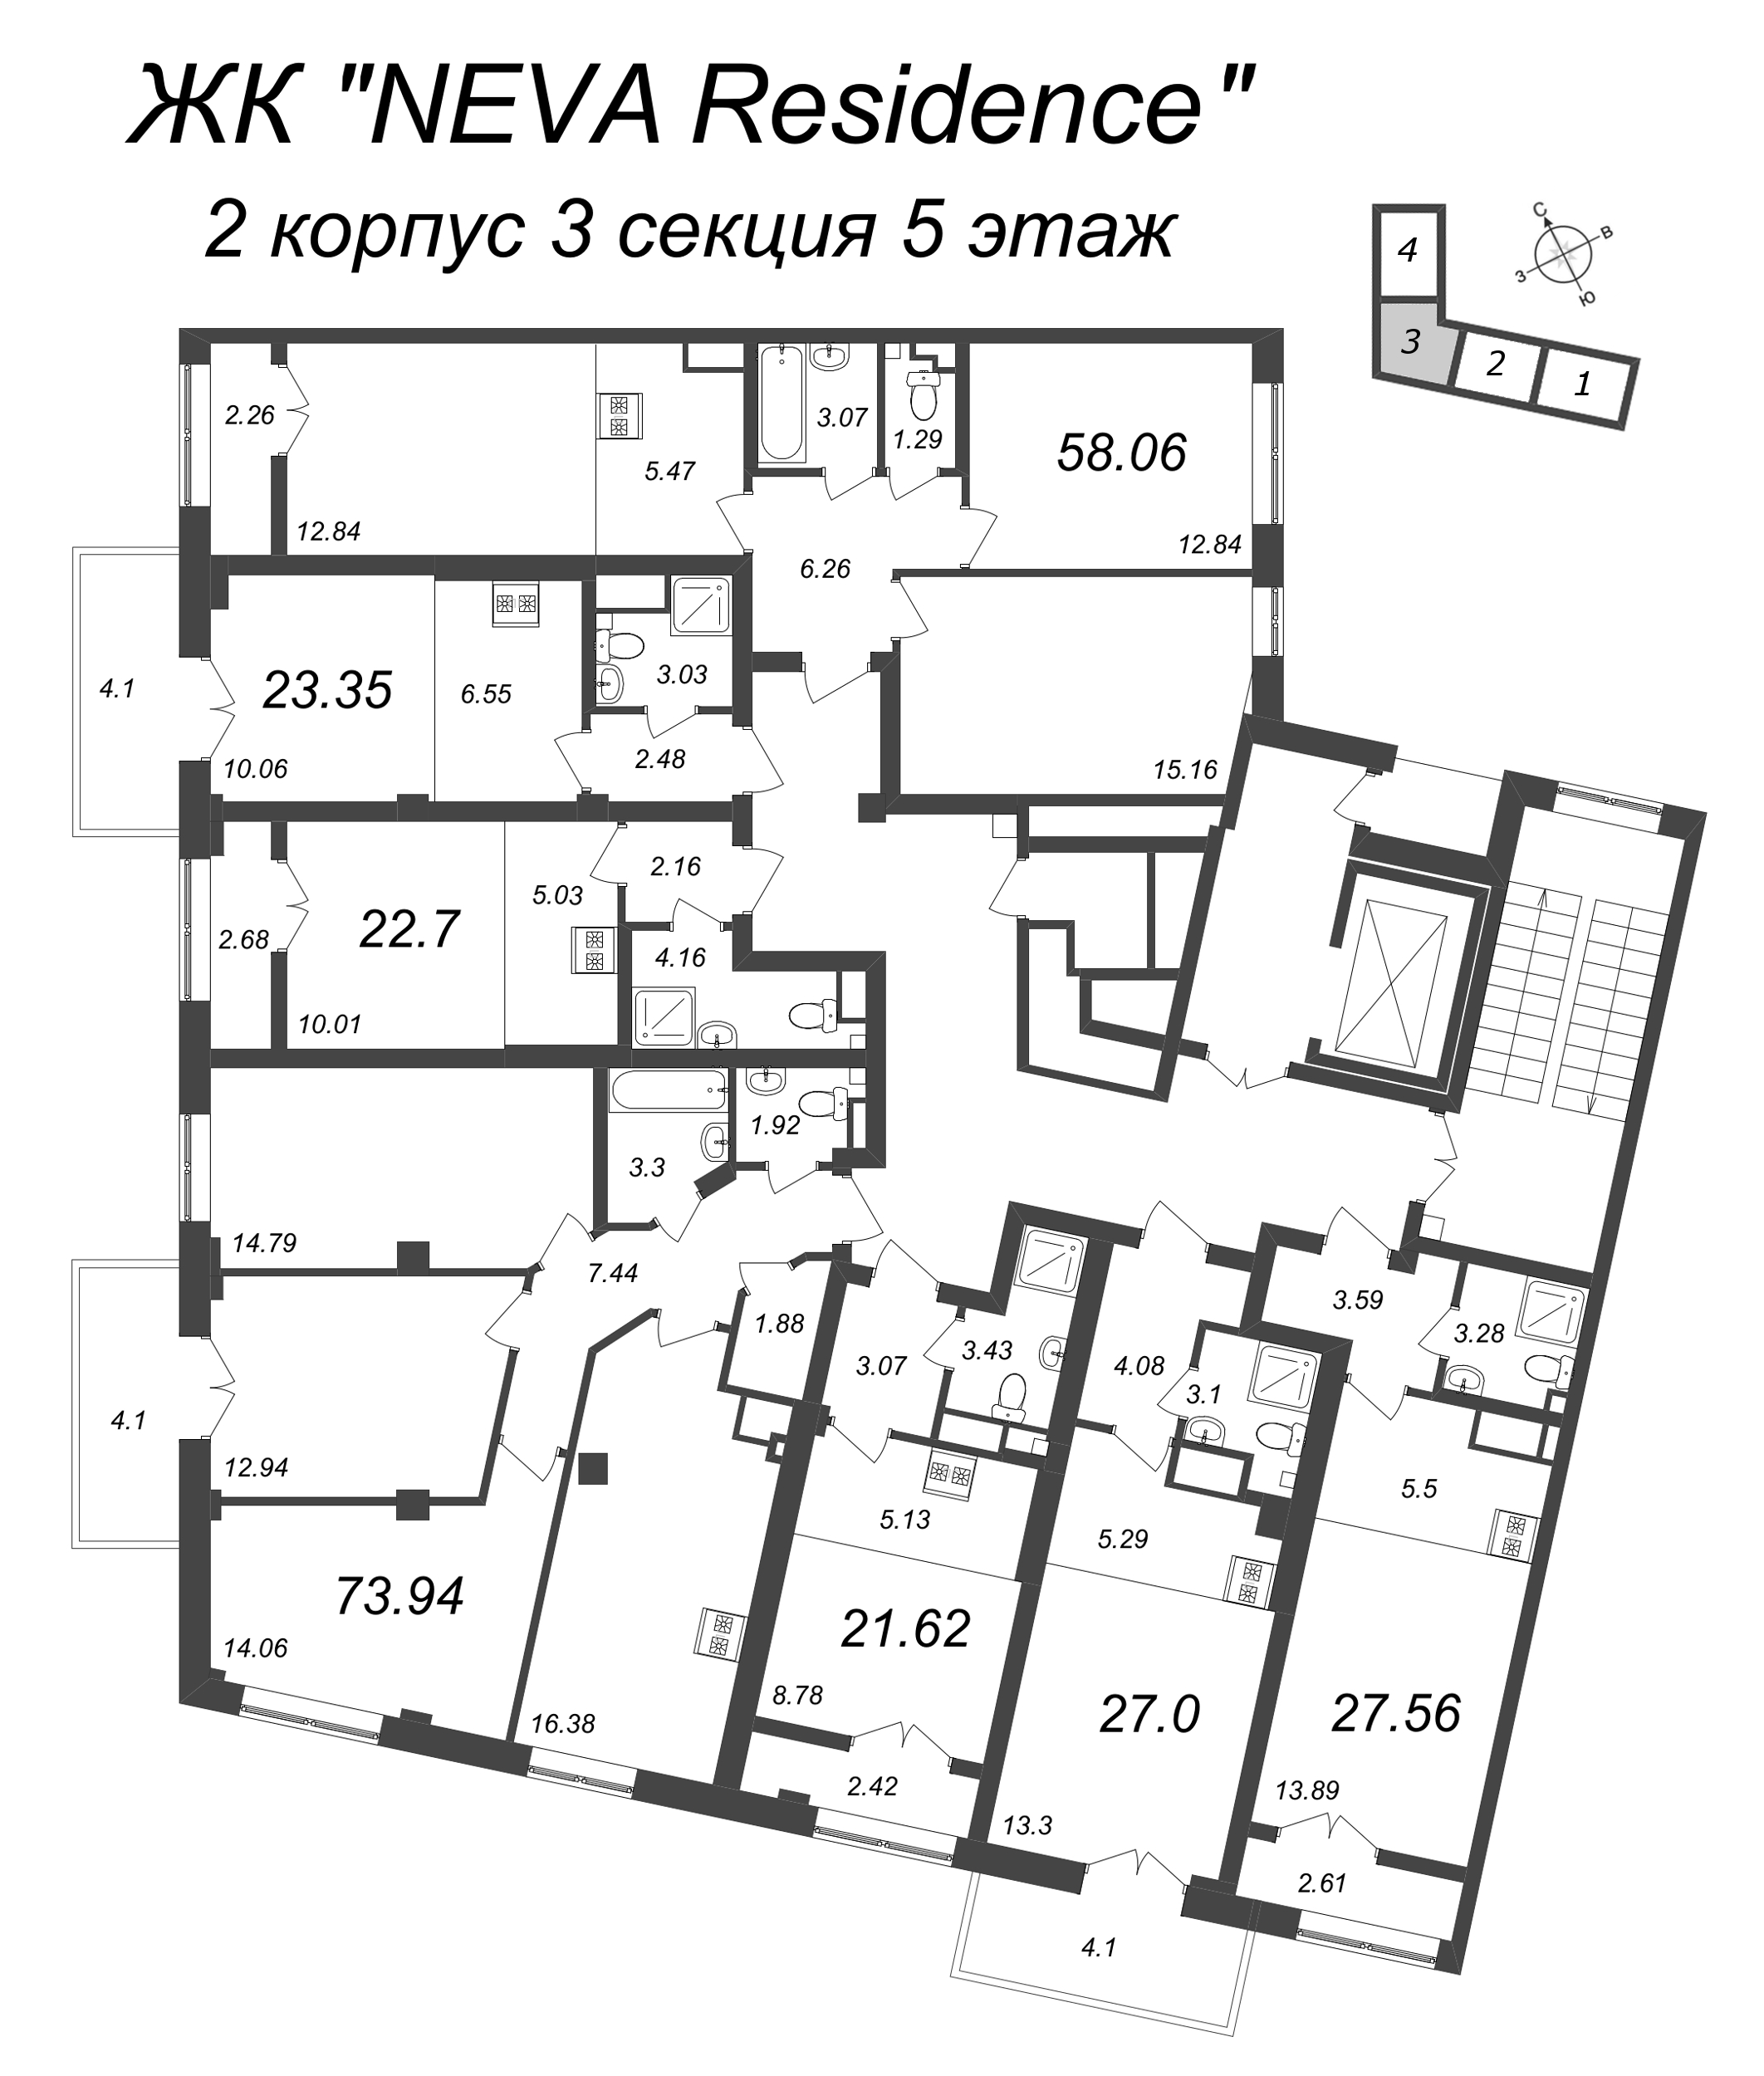 Квартира-студия, 27.56 м² в ЖК "Neva Residence" - планировка этажа